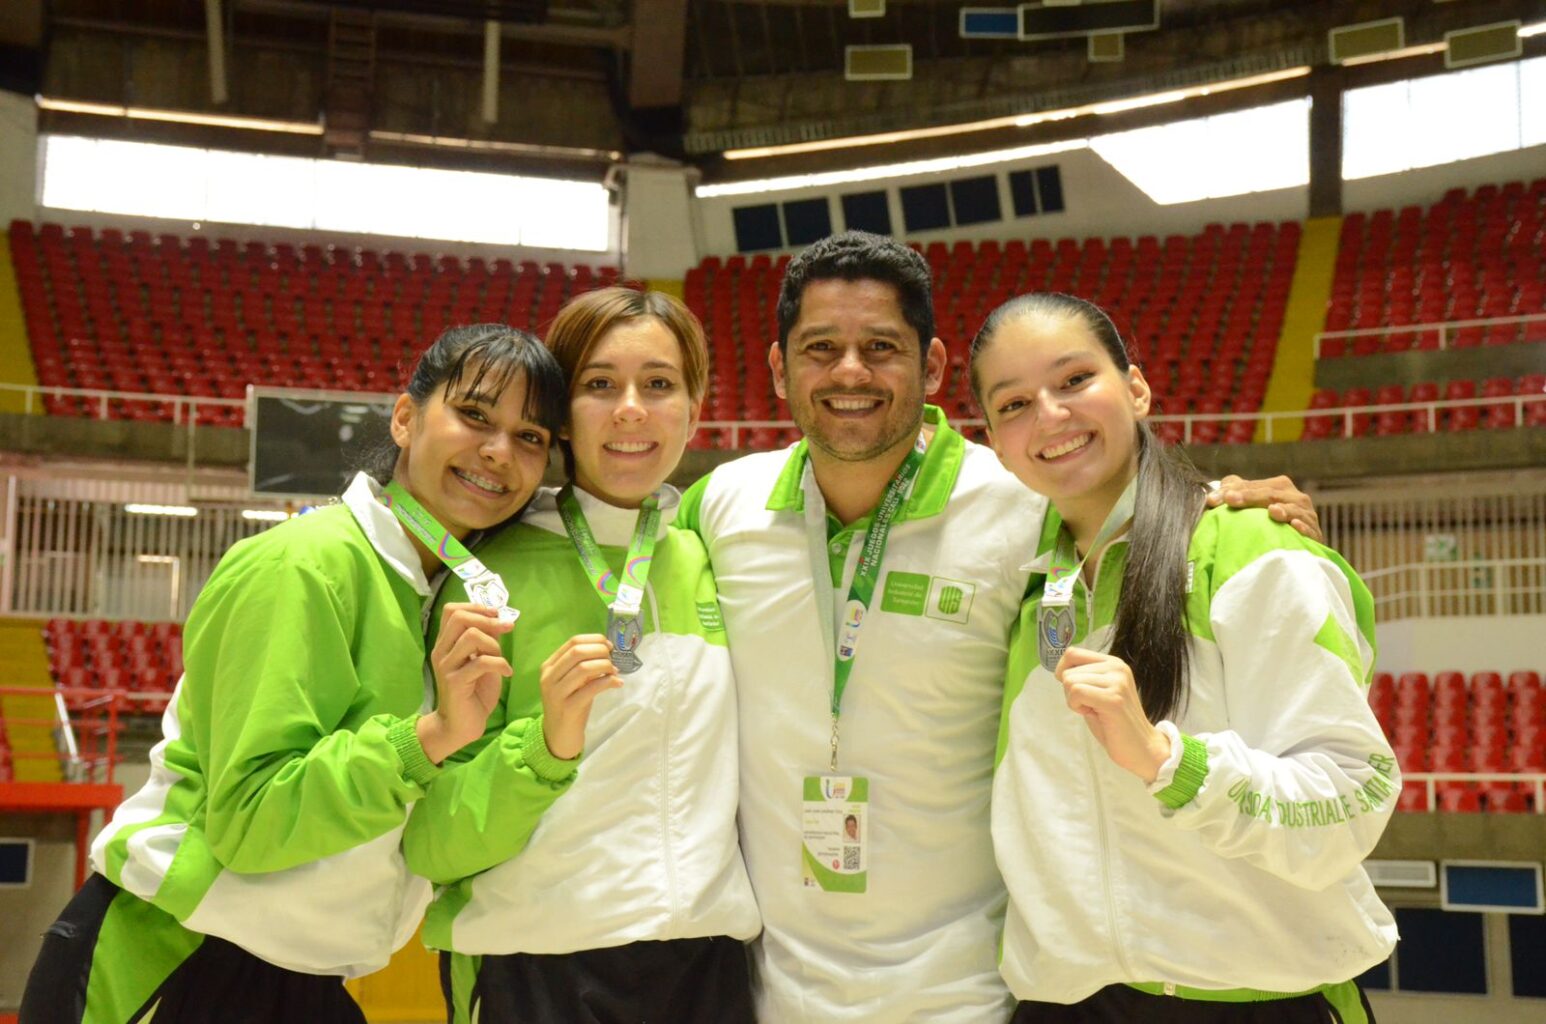 El equipo de kata intermedio femenino conformado por Luisa Pinto, Gabriela Landinez y Laura Bautista ocuparon el segundo lugar de su categoría. En la imagen sostienen las medallas.